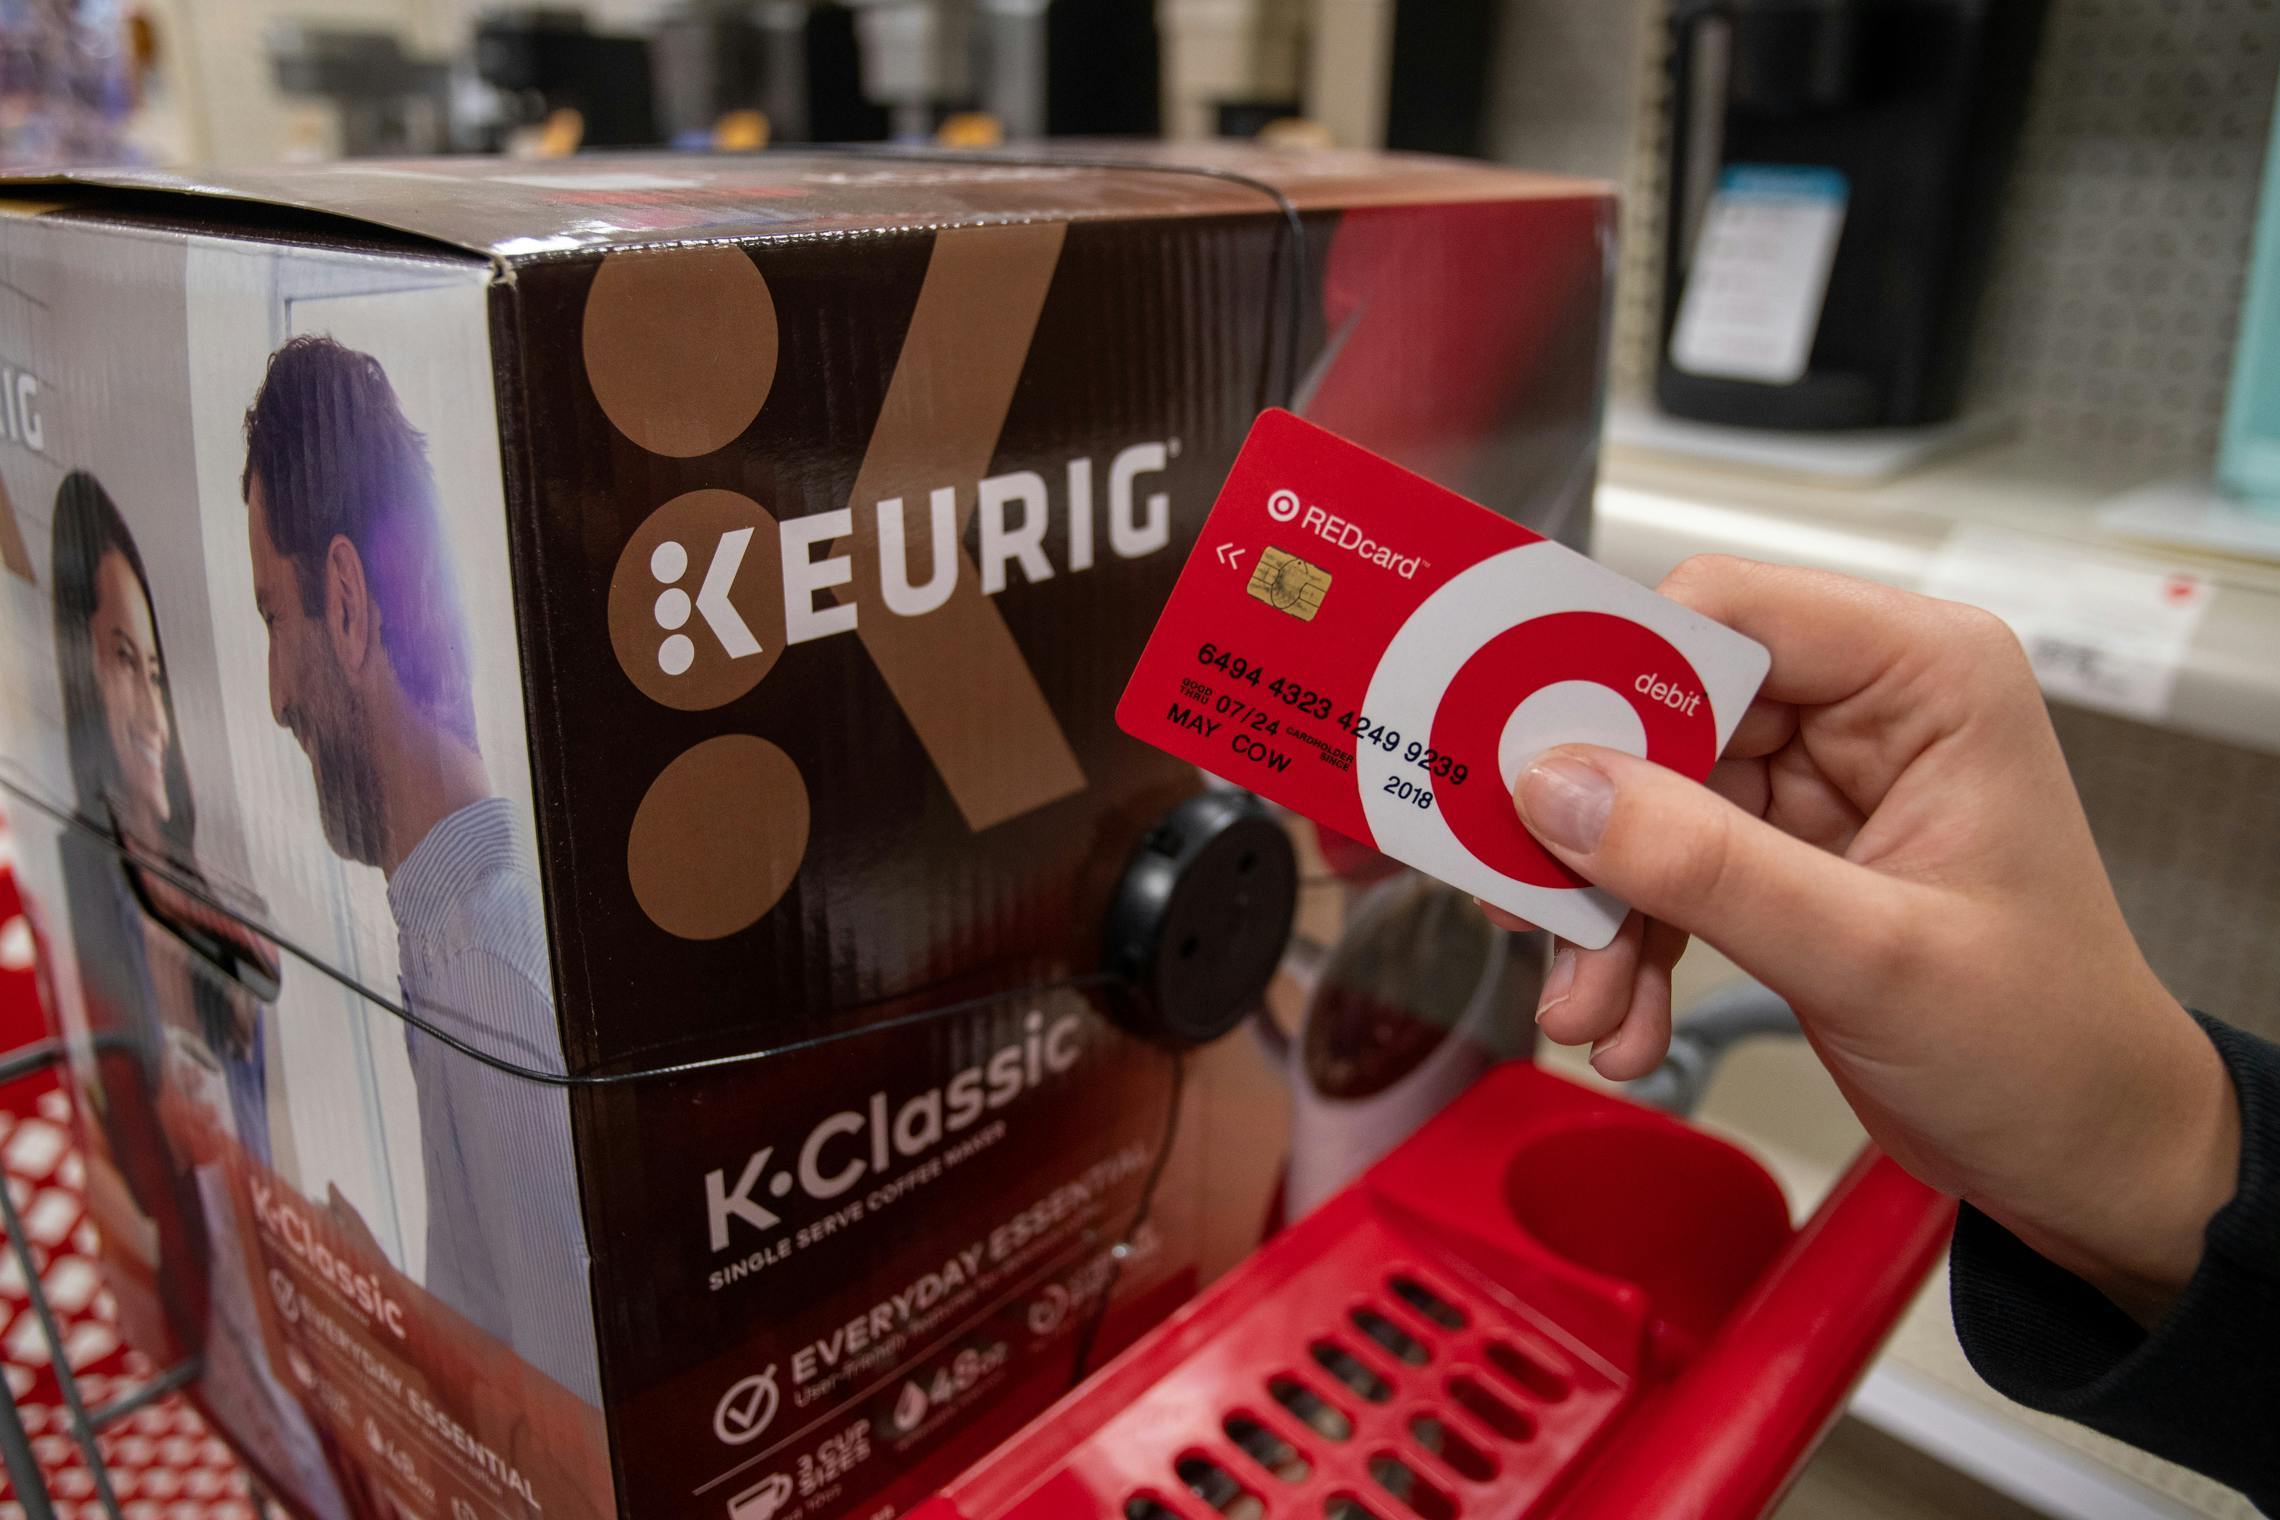 Target red card held next to a Keurig coffee maker inside Target.